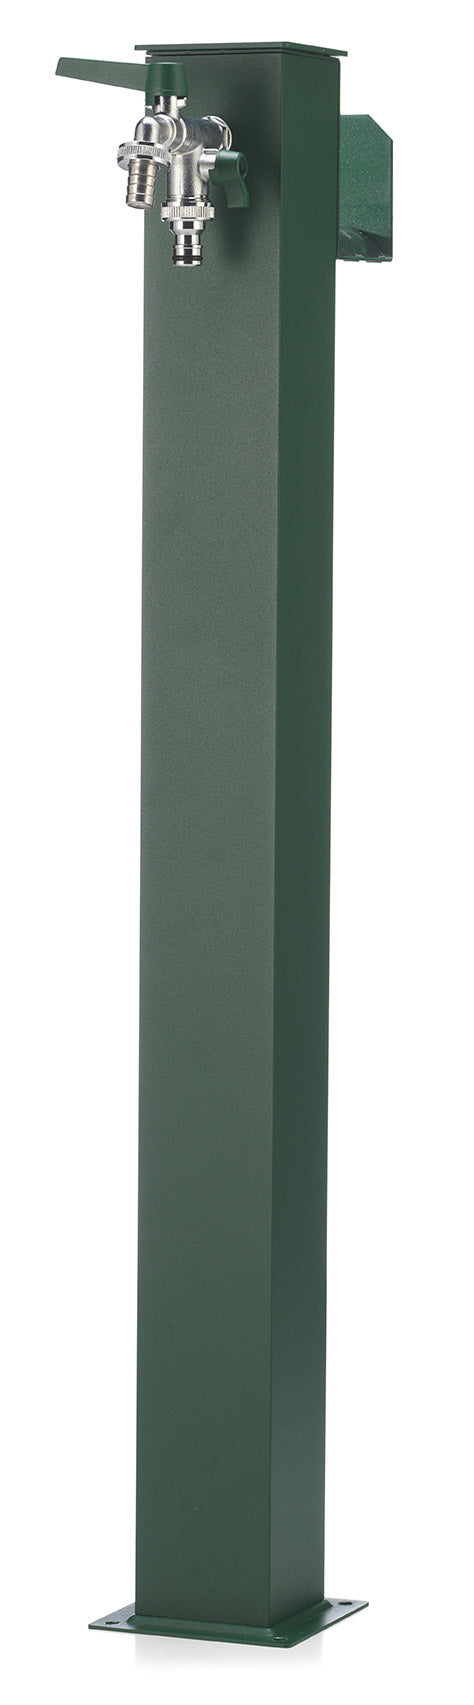 Fontana da Giardino con Doppio Rubinetto Belfer 42/QRR Verde prezzo